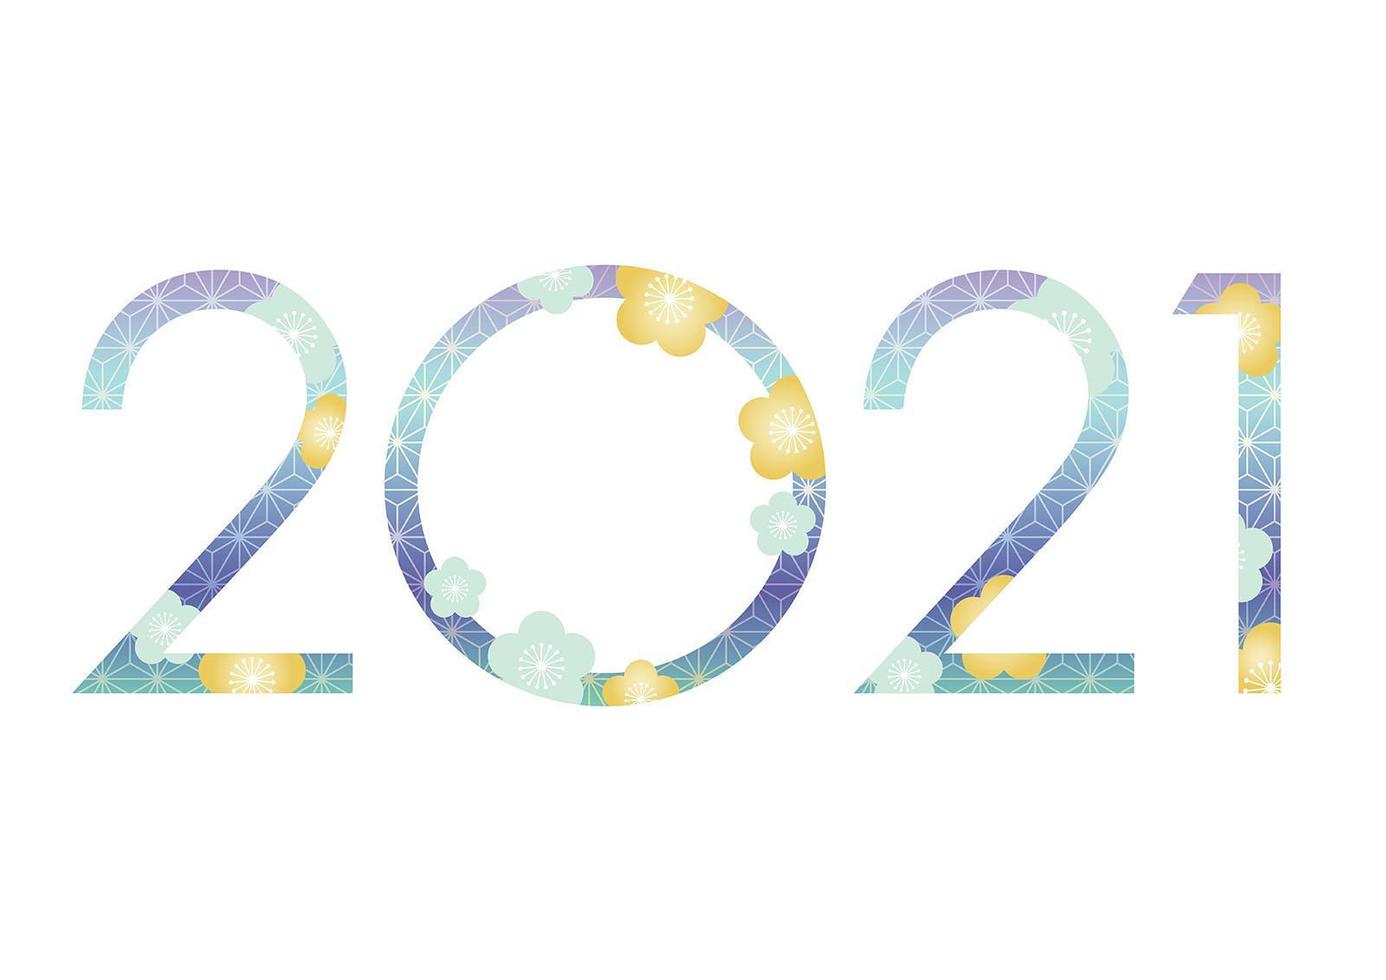 conception du nouvel an 2021 avec des motifs traditionnels japonais vecteur